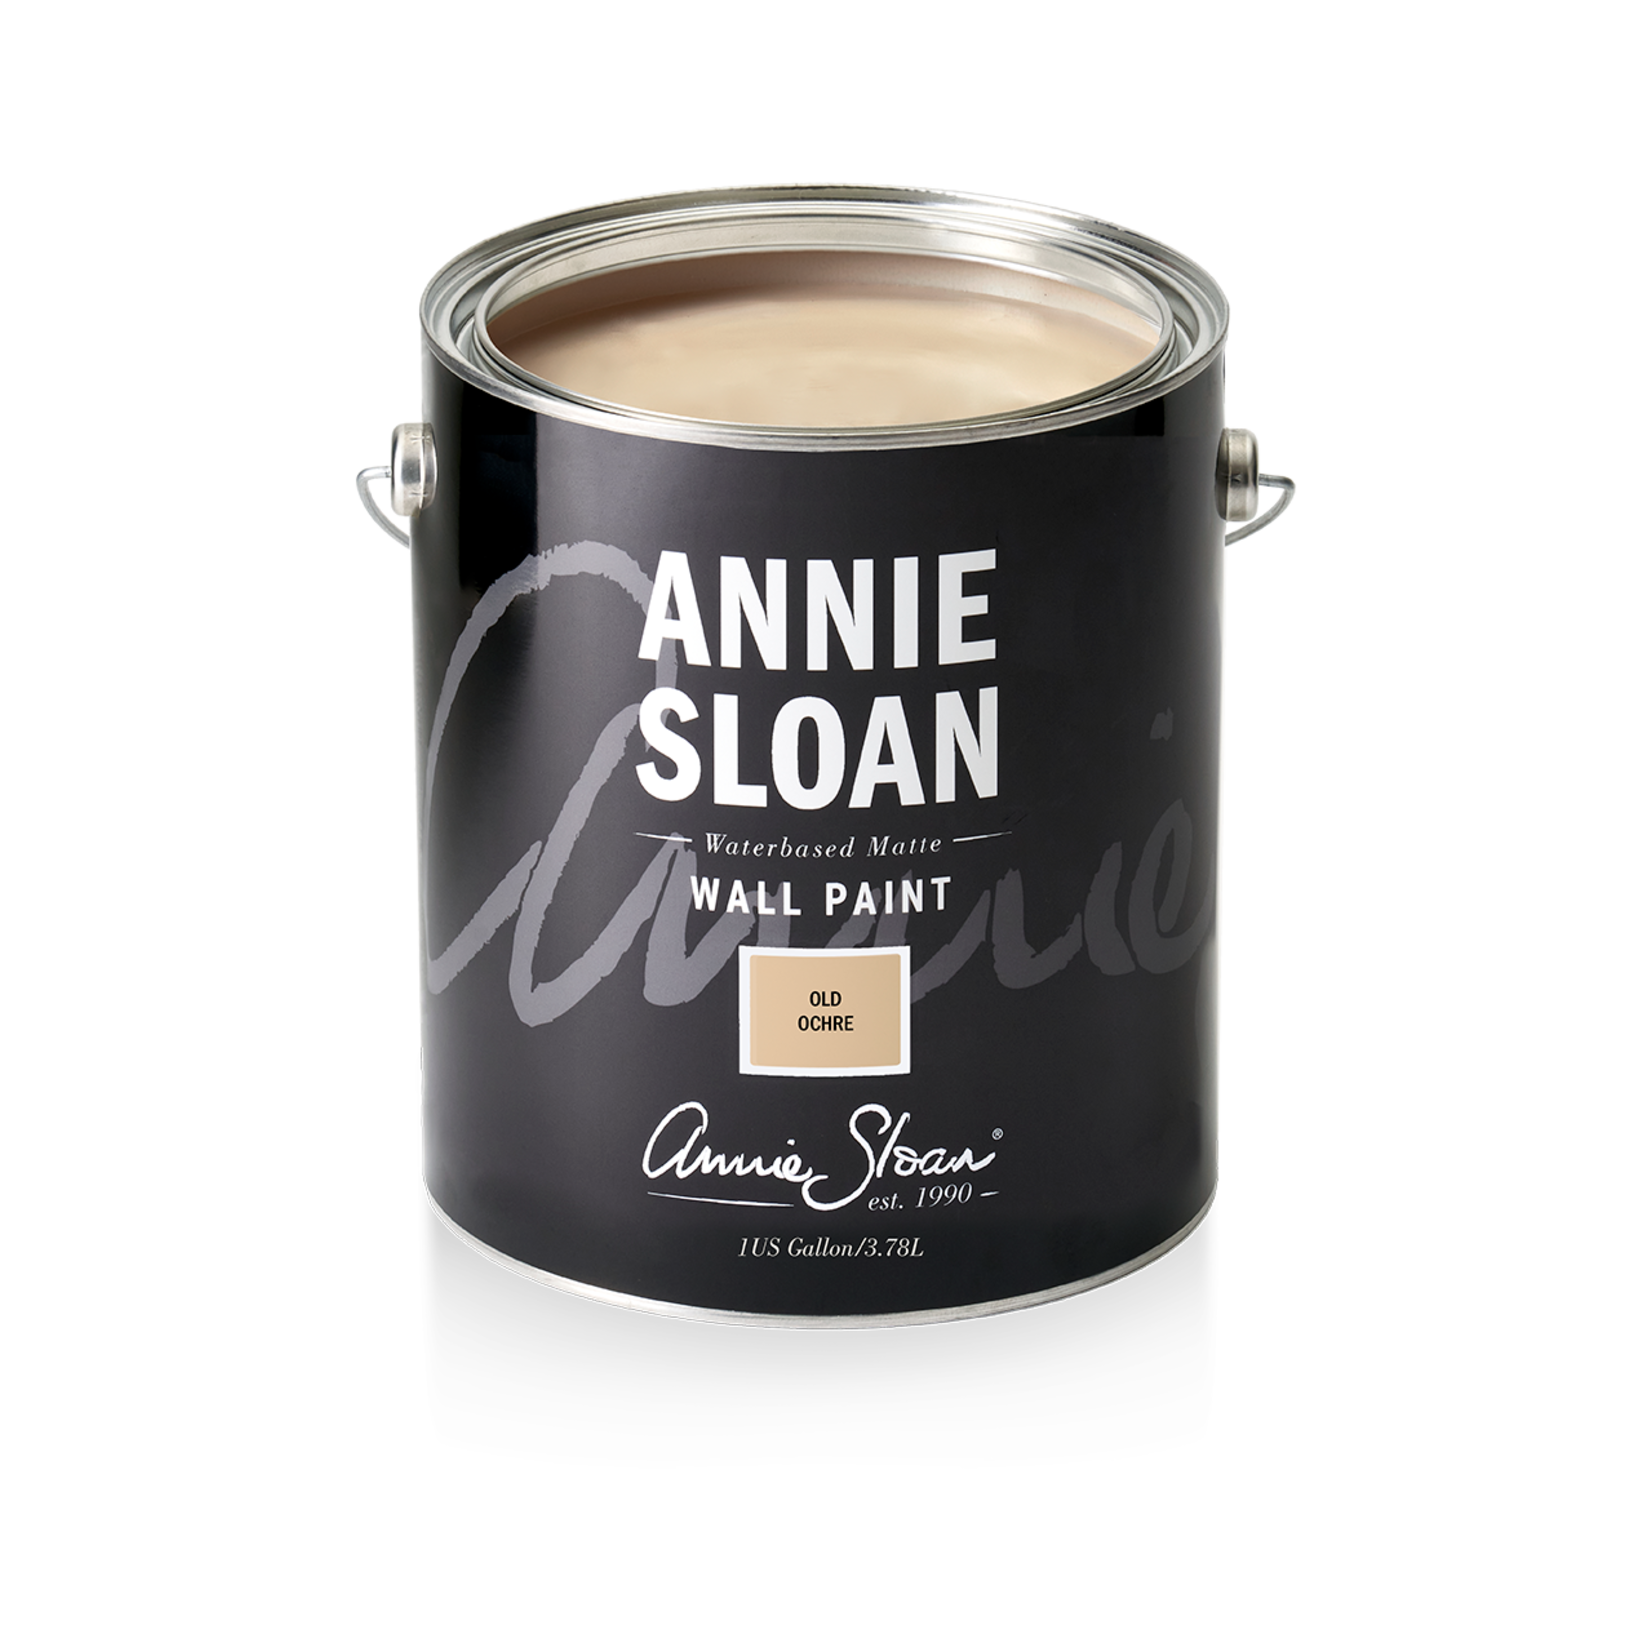 Annie Sloan Annie Sloan Wall Paint 1 Gallon Old Ochre